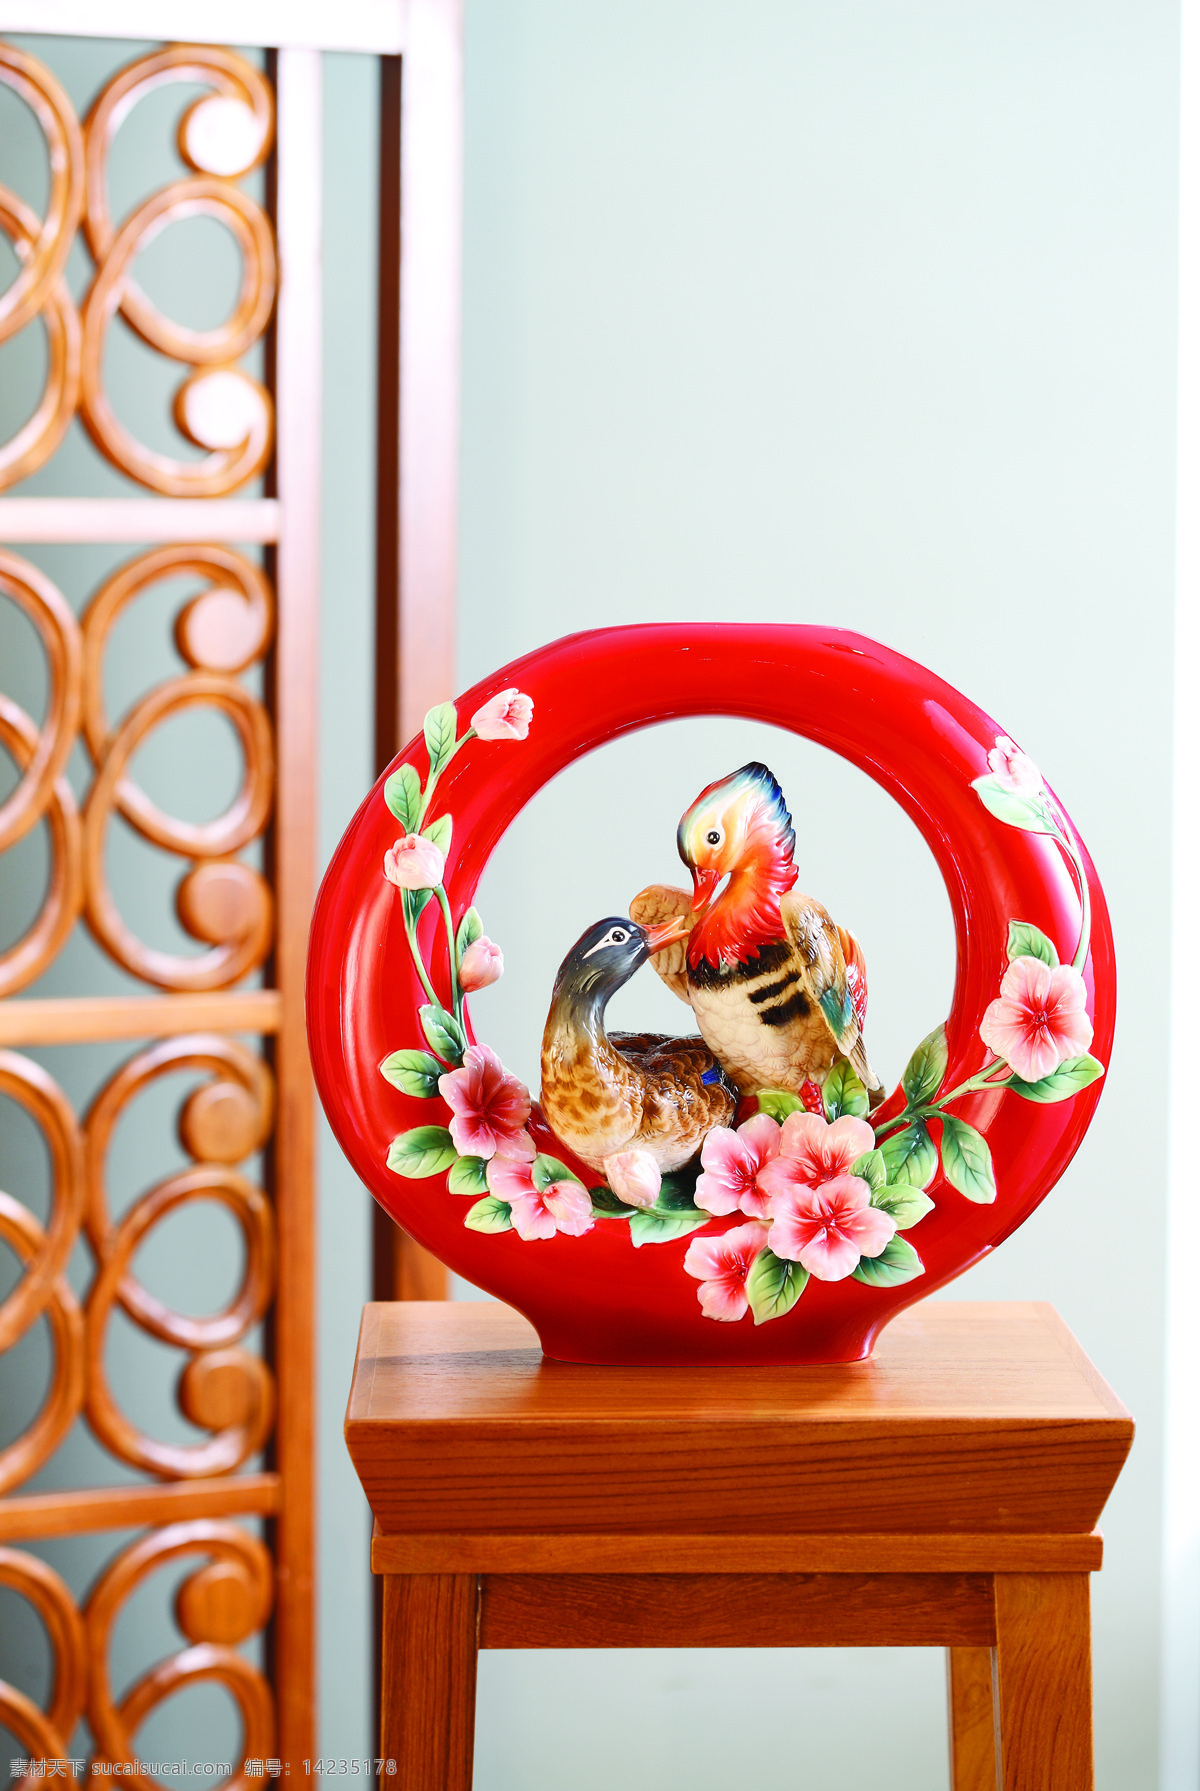 法兰瓷 瓷器 中国 陶瓷 工艺品 艺术 工艺 传统文化 瓷釉 艺术品 装饰 饰品 红色 摆饰 摆件 古玩 古董 文化艺术